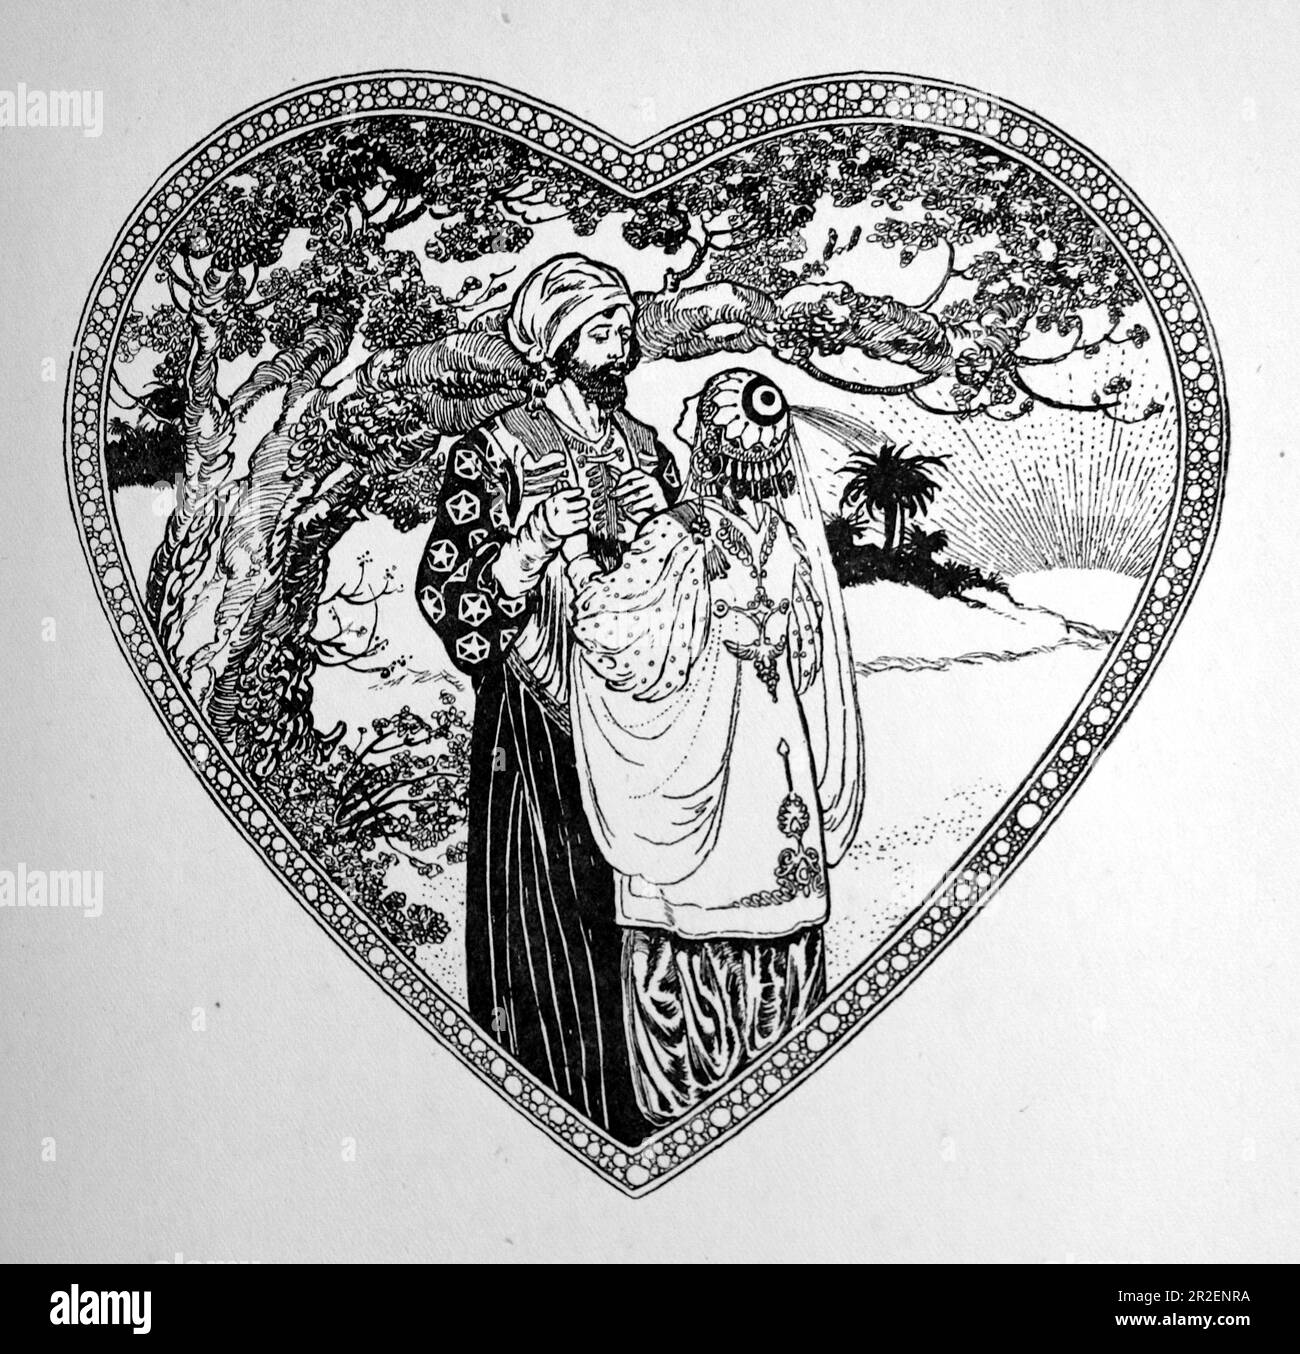 Von Rene Bull Strichzeichnung eines Mannes und einer Frau in einem herzförmigen Rahmen neben einem überhängenden Baum. Aus Richtung Rubaiyat von Omar Khayyam. Stockfoto